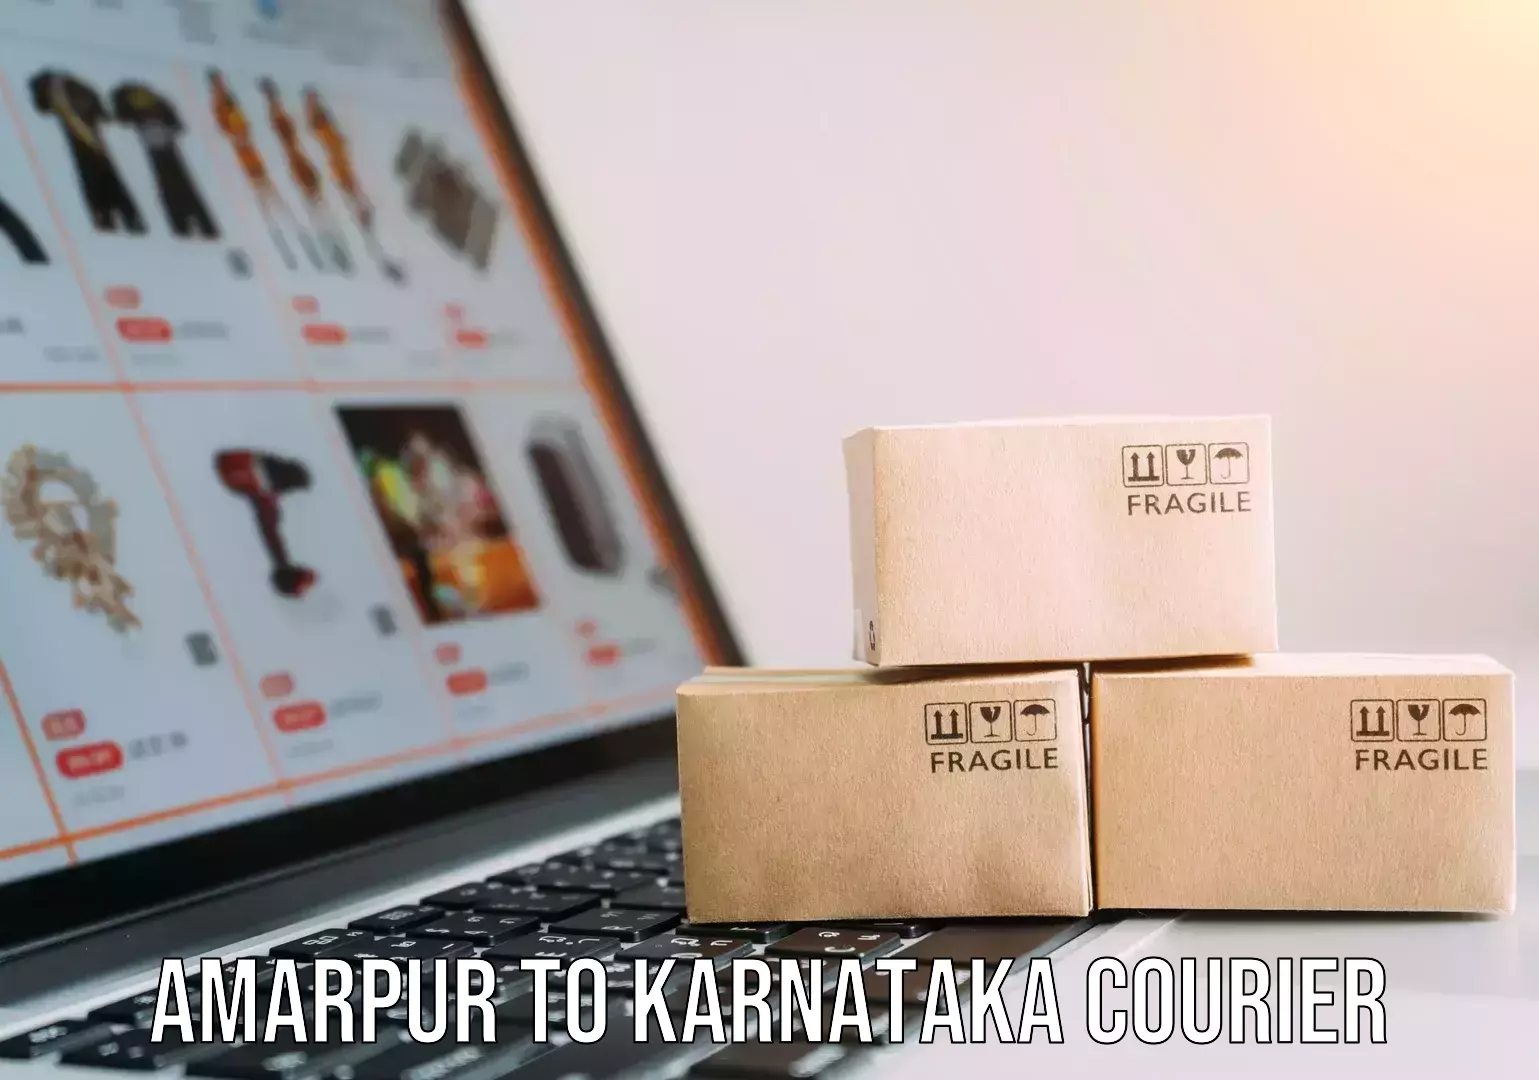 Custom courier packages in Amarpur to Karnataka